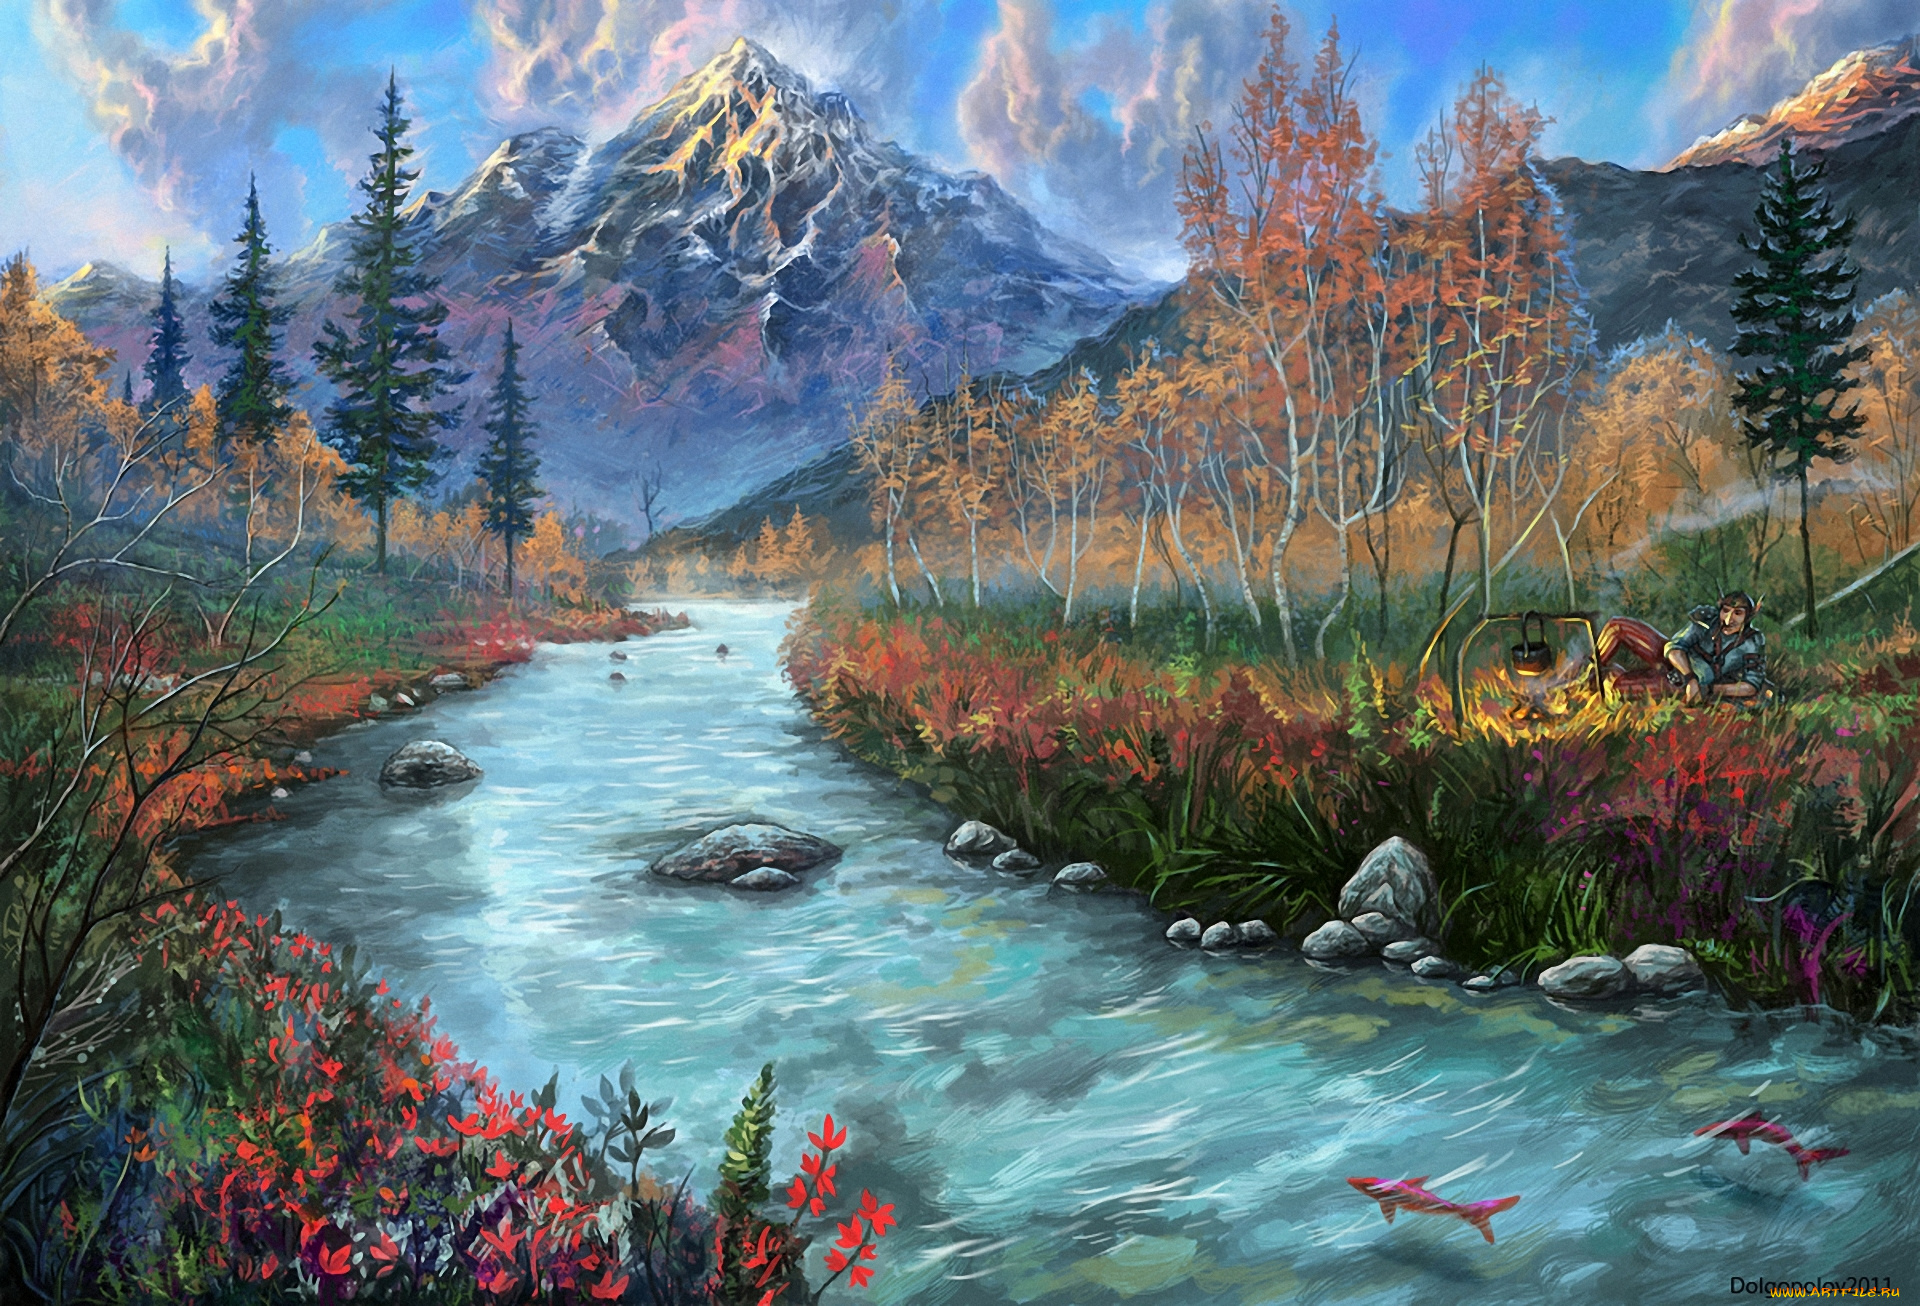 рисованные, живопись, пейзаж, костёр, рыбы, человек, камни, горы, река